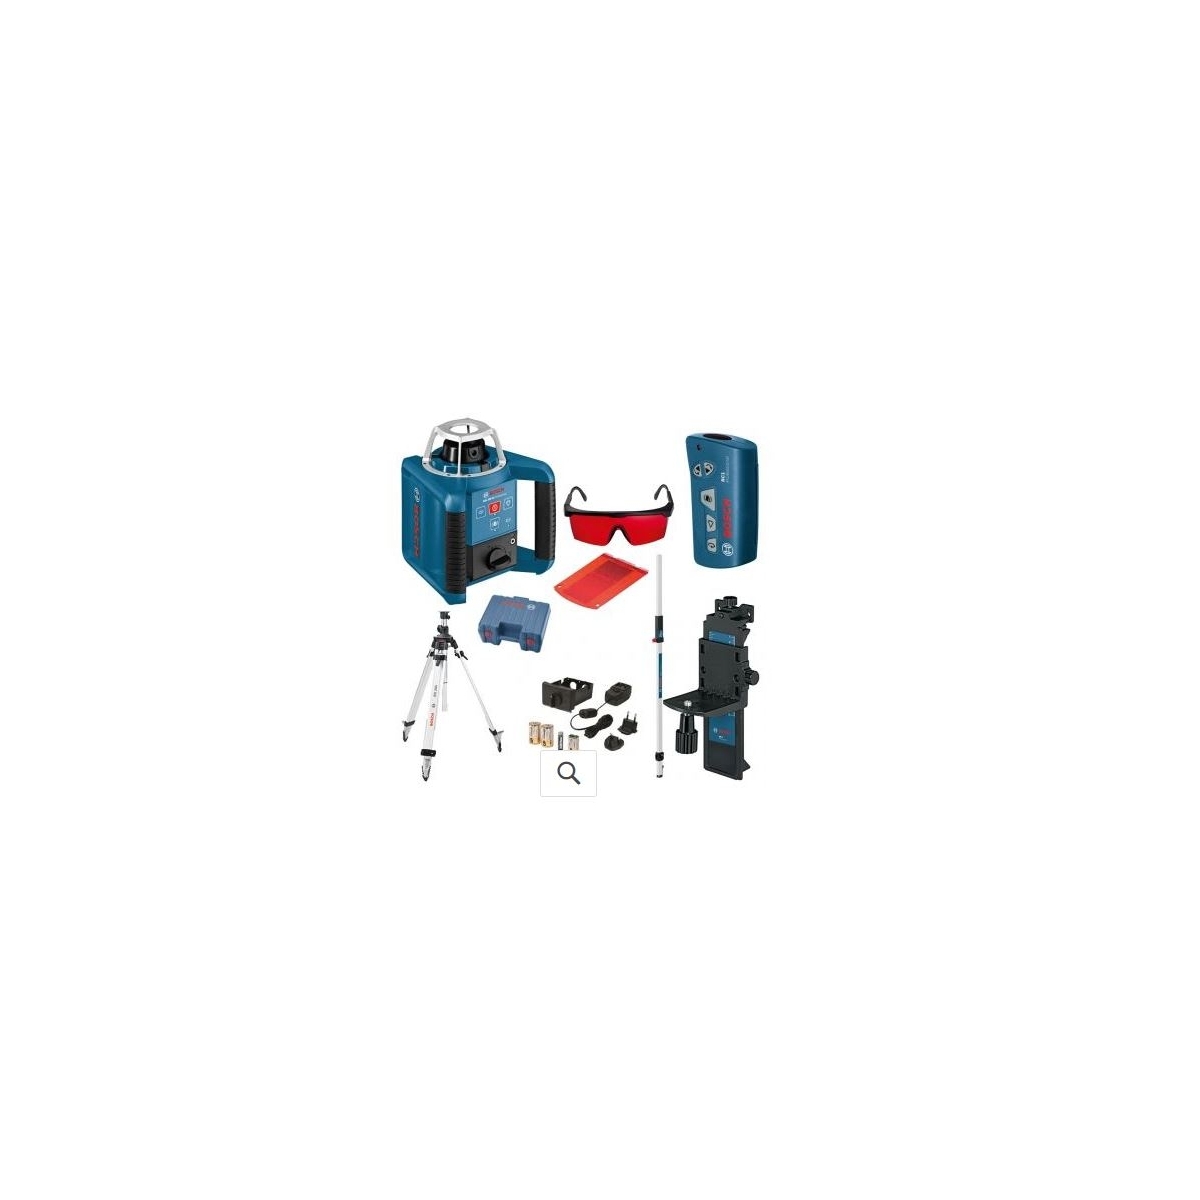 Nível Laser Bosch DRL300HV 061599405U - Comprar Nível Laser Bosch a um ótimo preço.